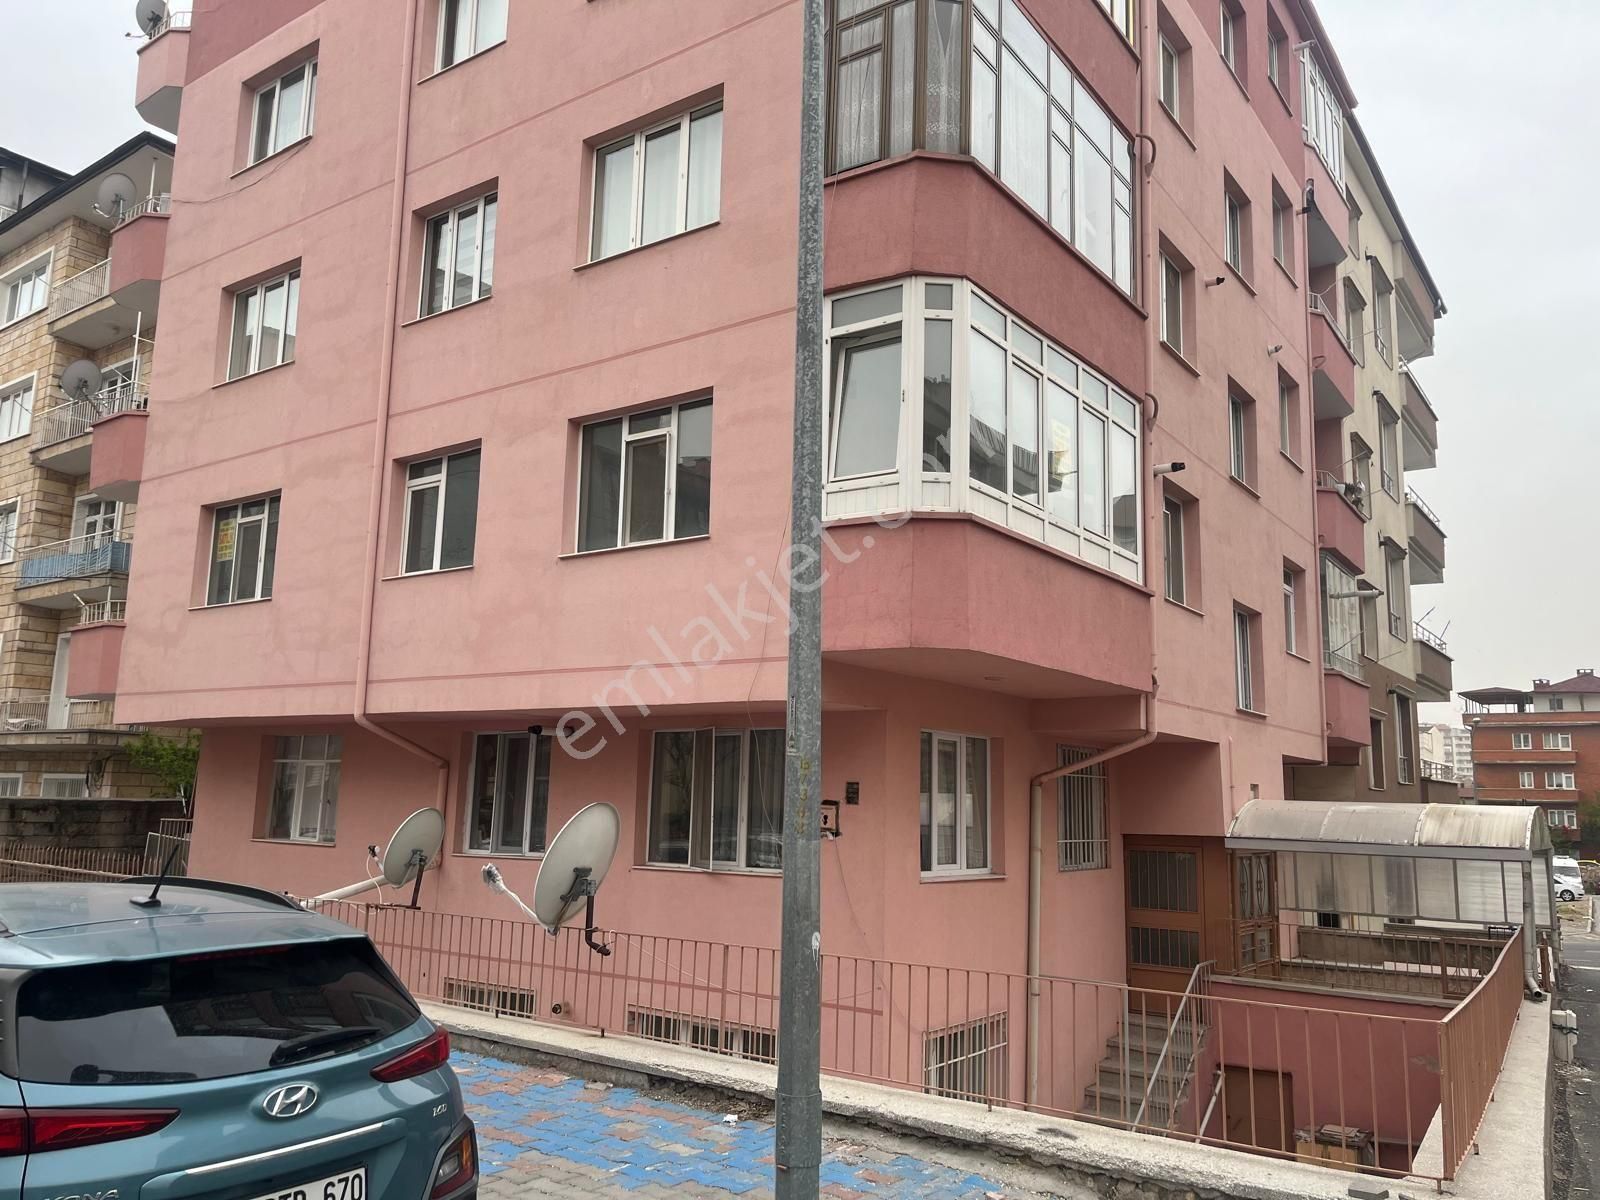 Nevşehir Merkez 350 Evler Satılık Daire Nevşehir Merkezde Satılık 3+1 Daire